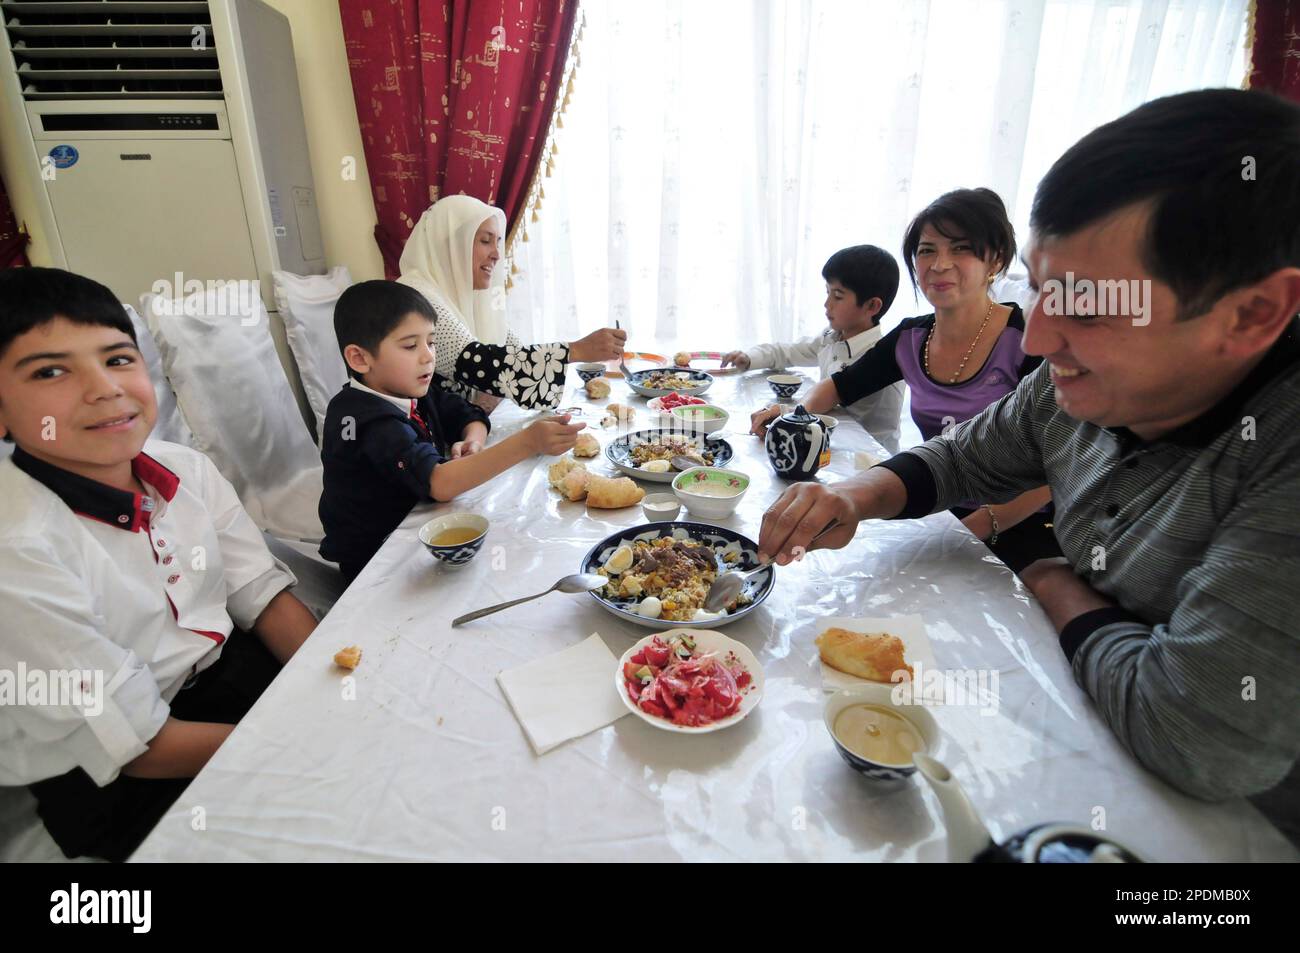 An Uzbek family enjoying a traditional Plov at the Central Asian Plov center in Tashkent, Uzbekistan. Stock Photo